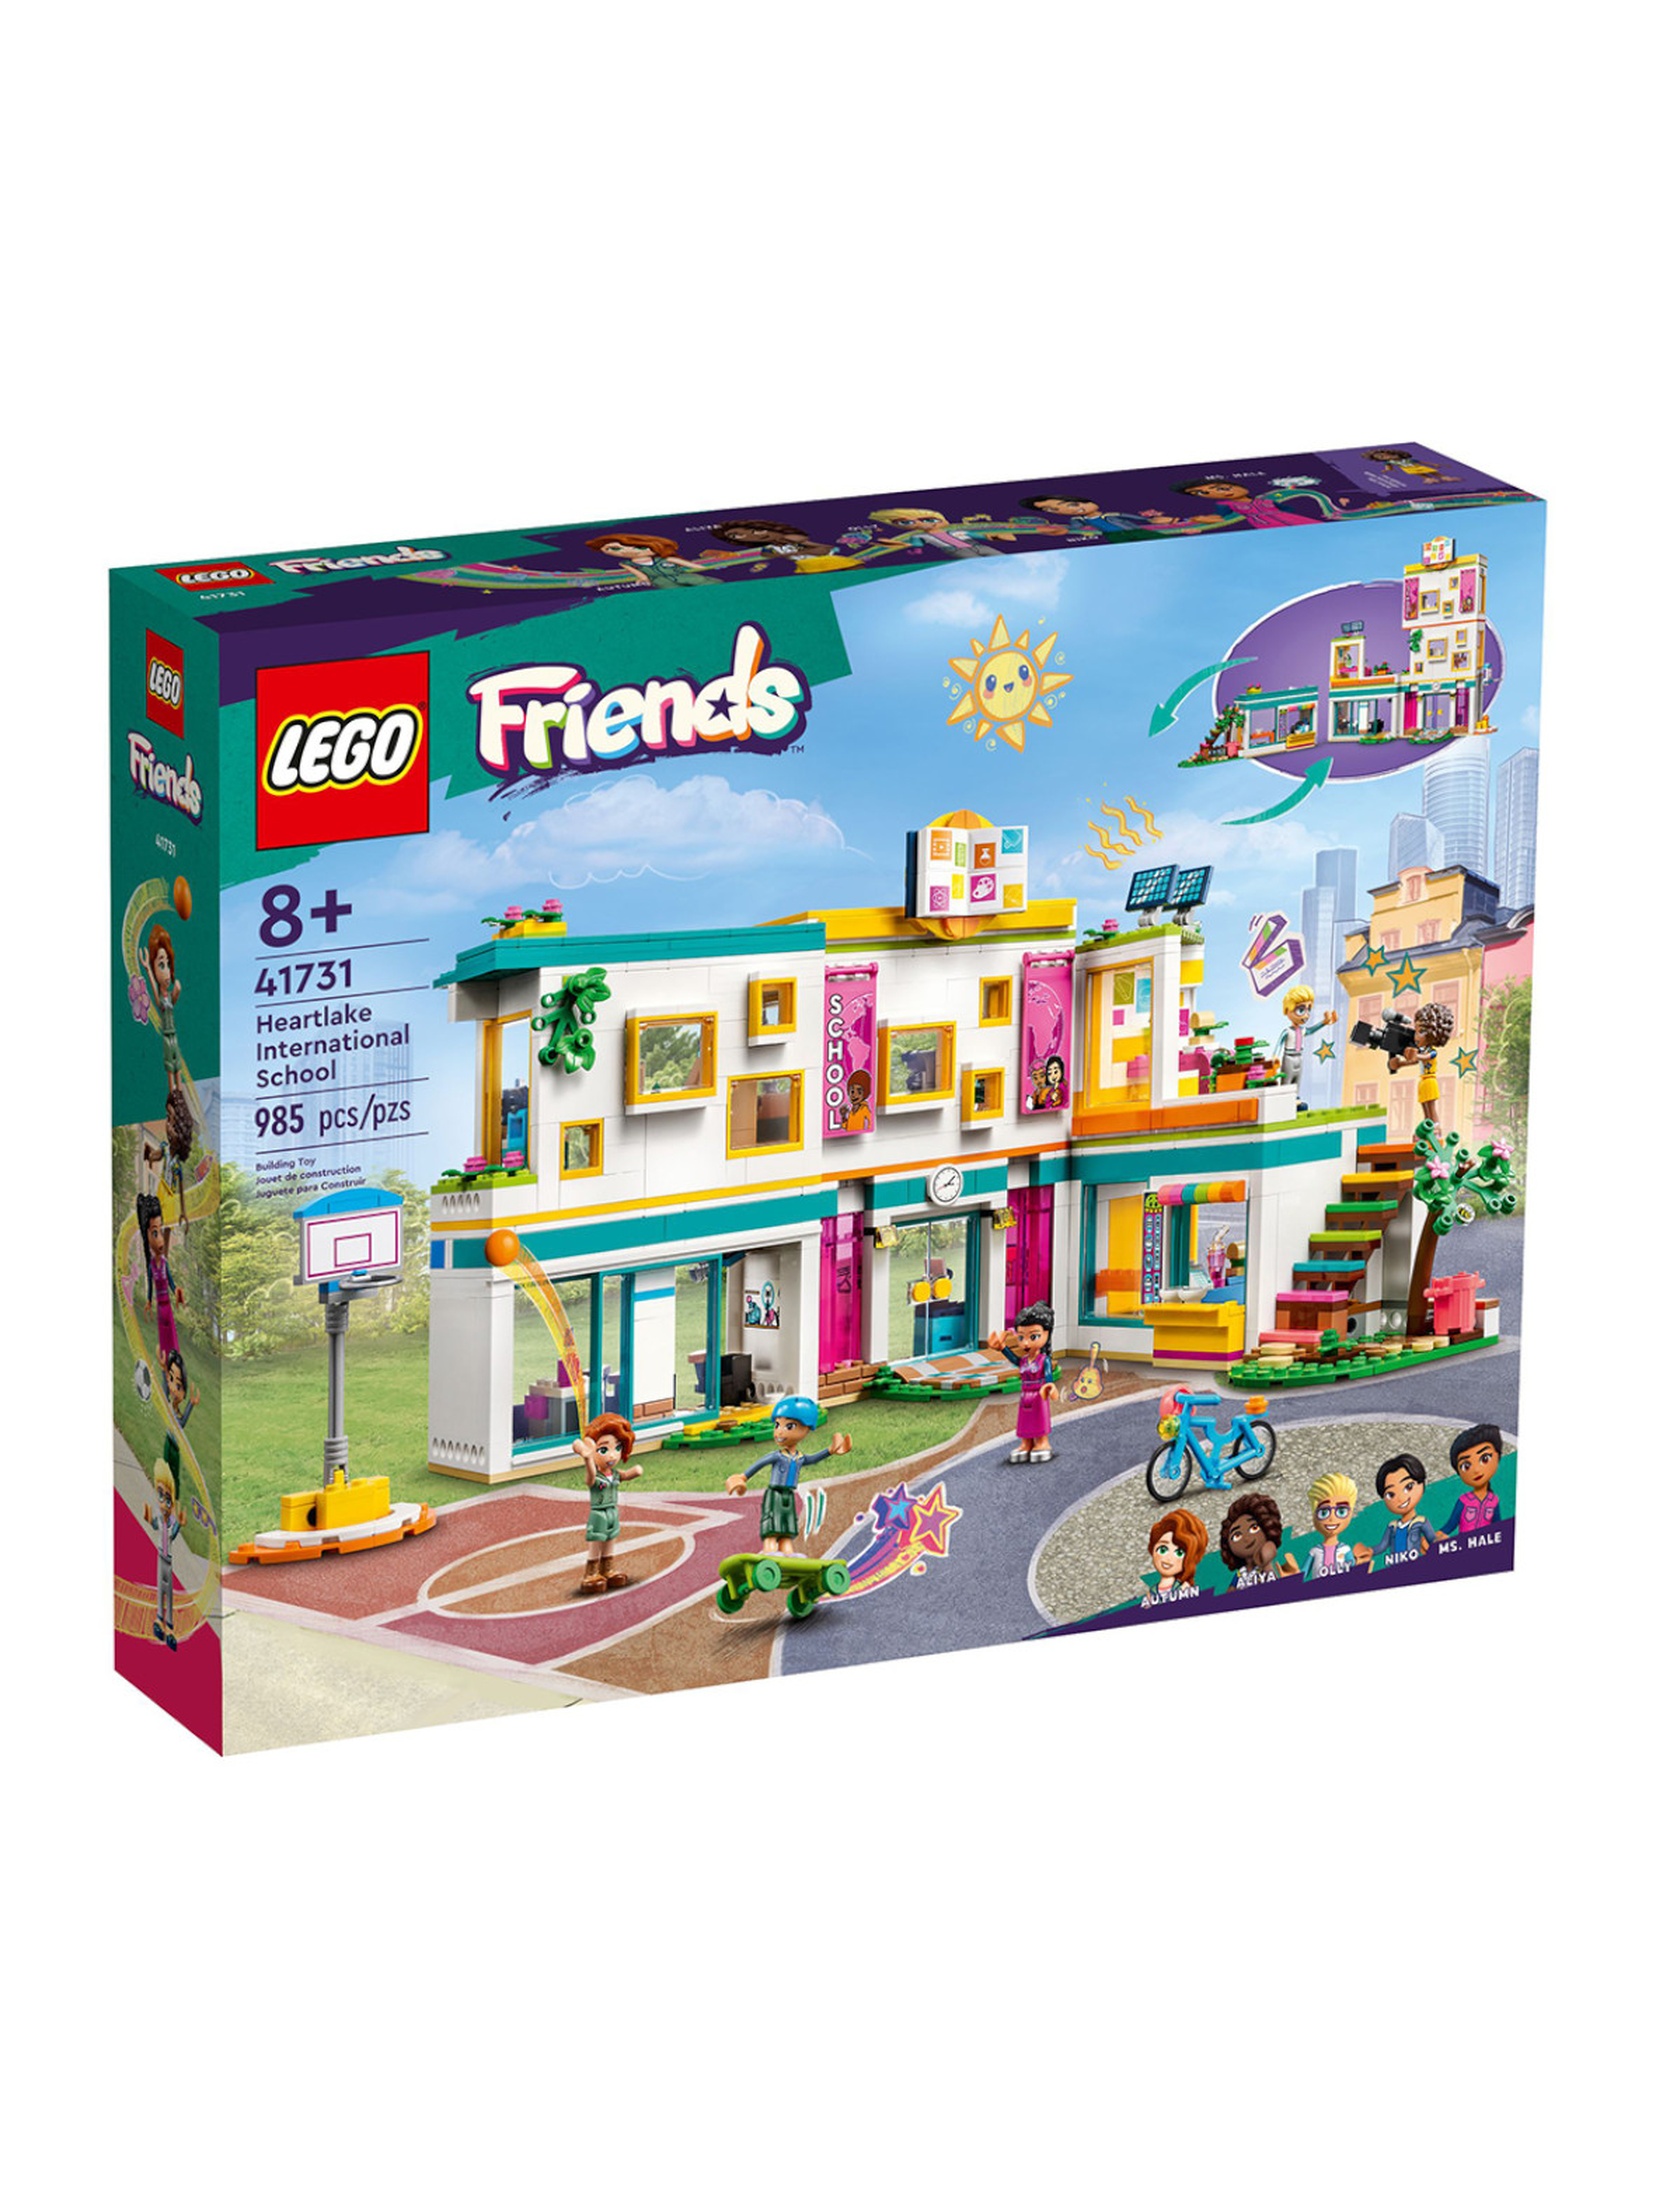 Klocki LEGO Friends 41731 Międzynarodowa szkoła w Heartlake - 985 elementów, wiek 8 +